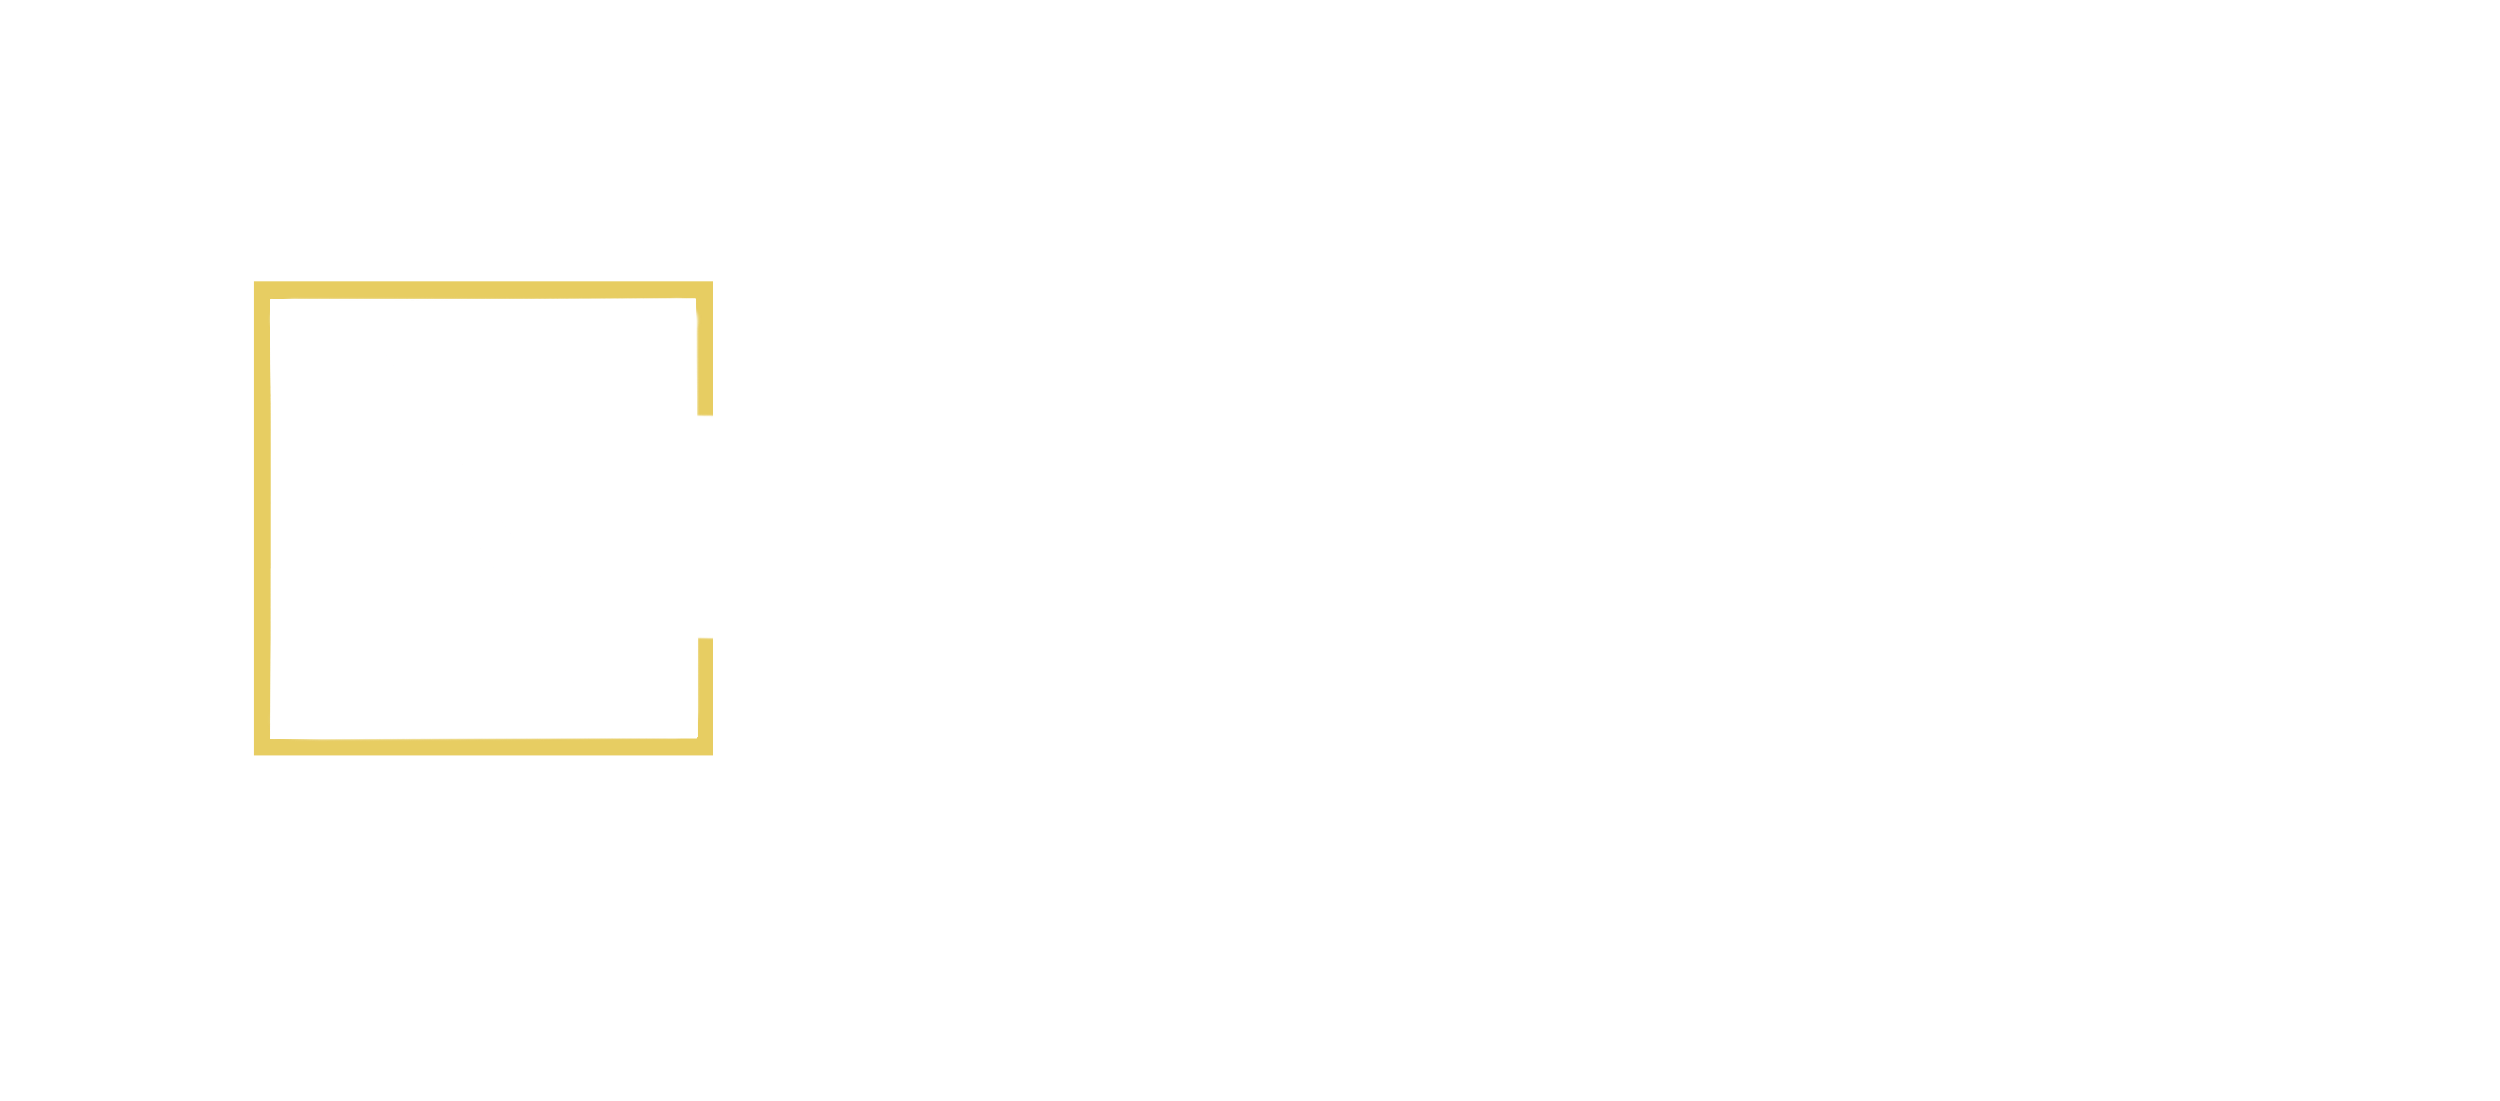 NatureCraft